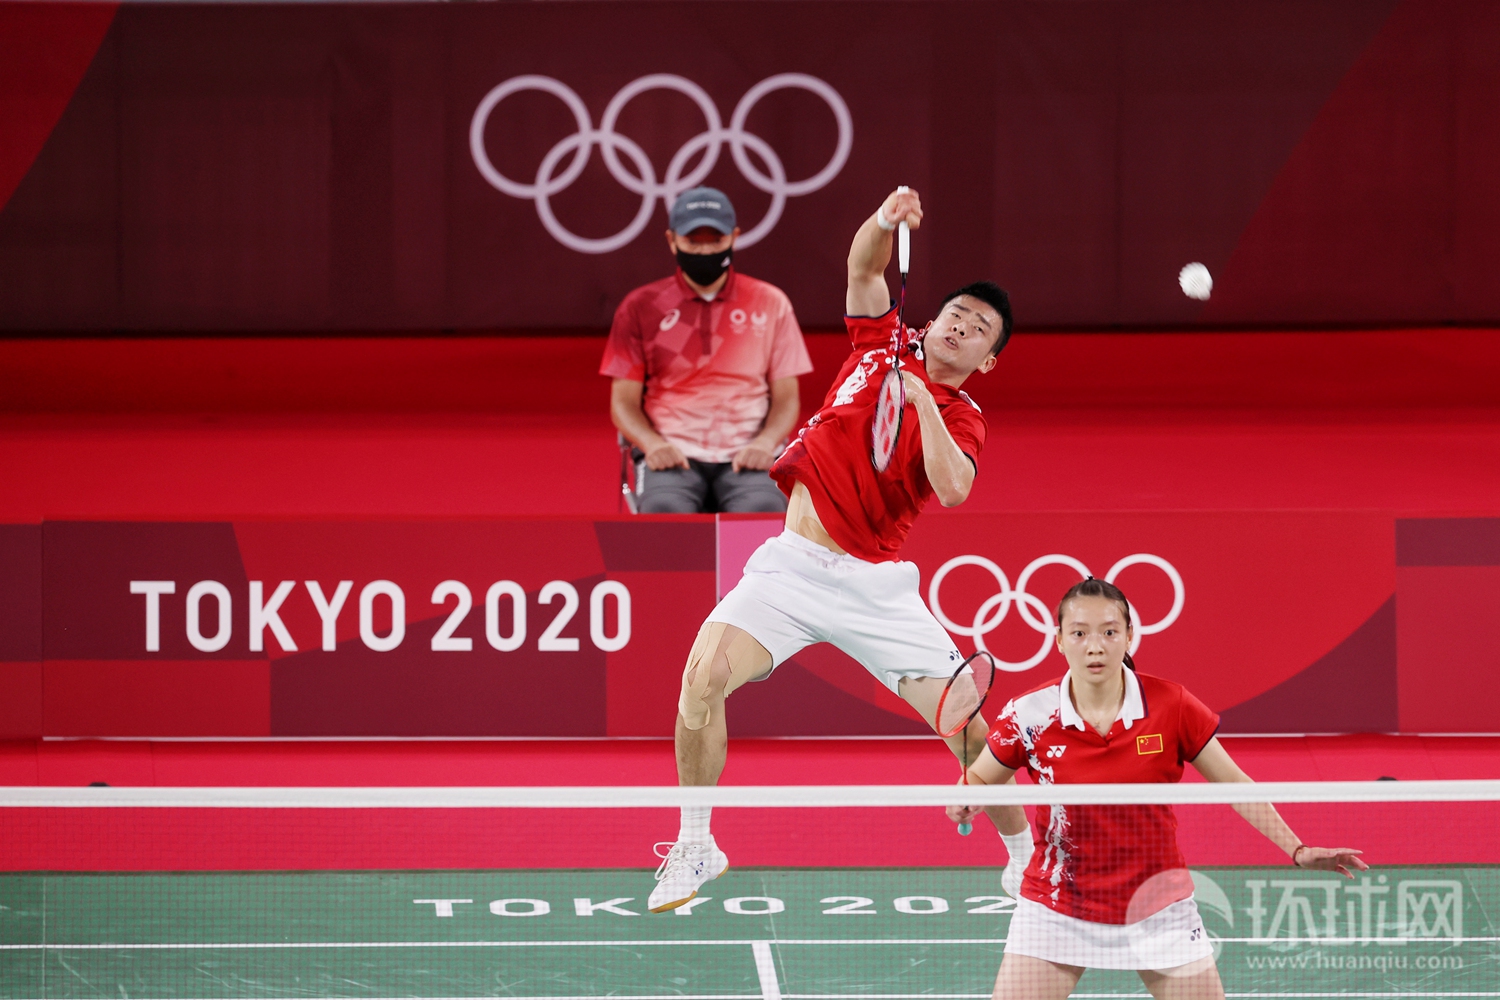 当地时间7月30日,在东京奥运会羽毛球混合双打决赛中,中国选手郑思维